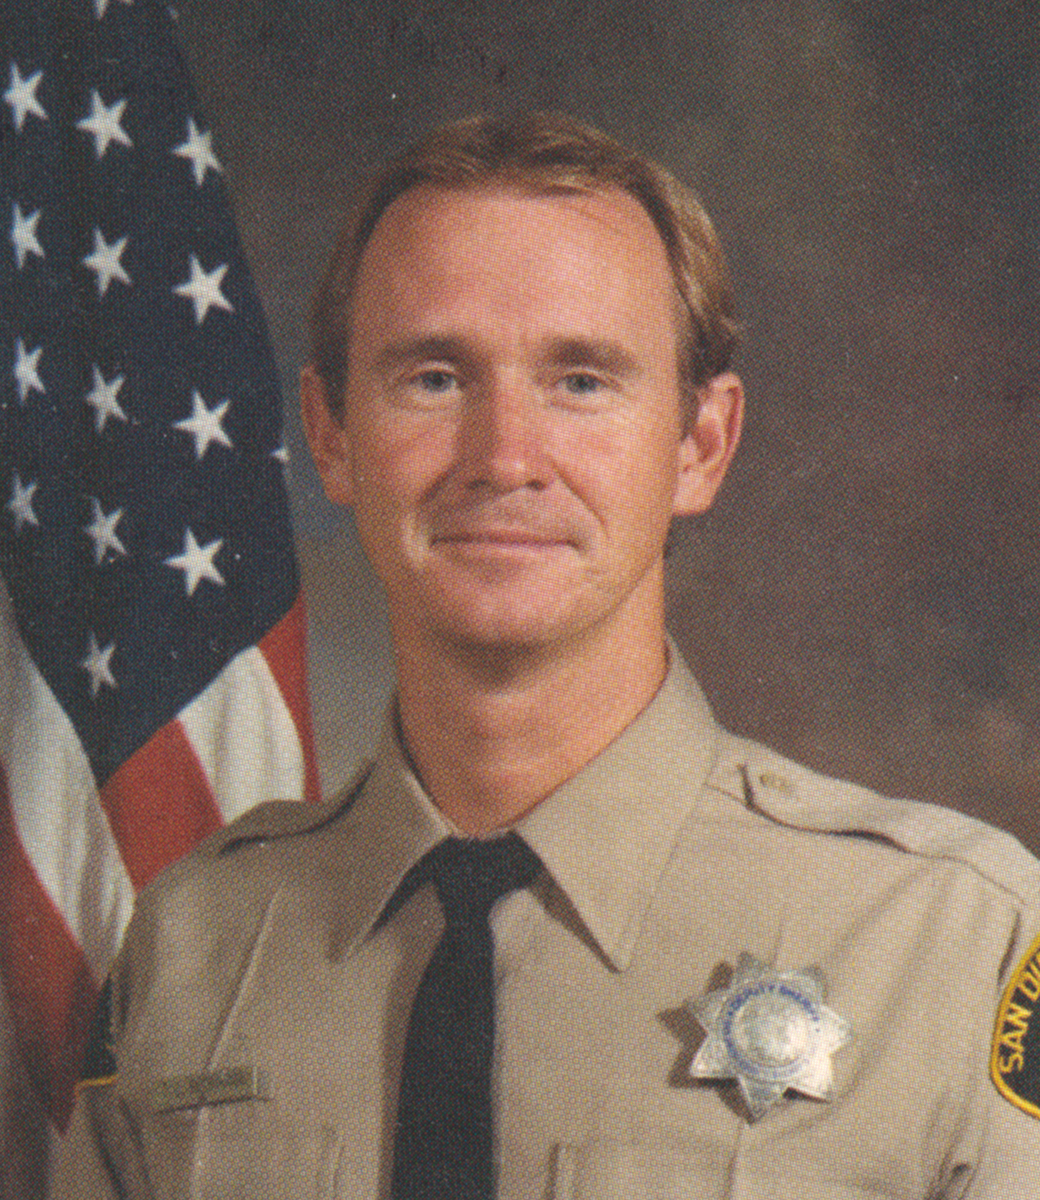 1989-02-08 EOW-Deputy Theodore L. Beckmann Jr